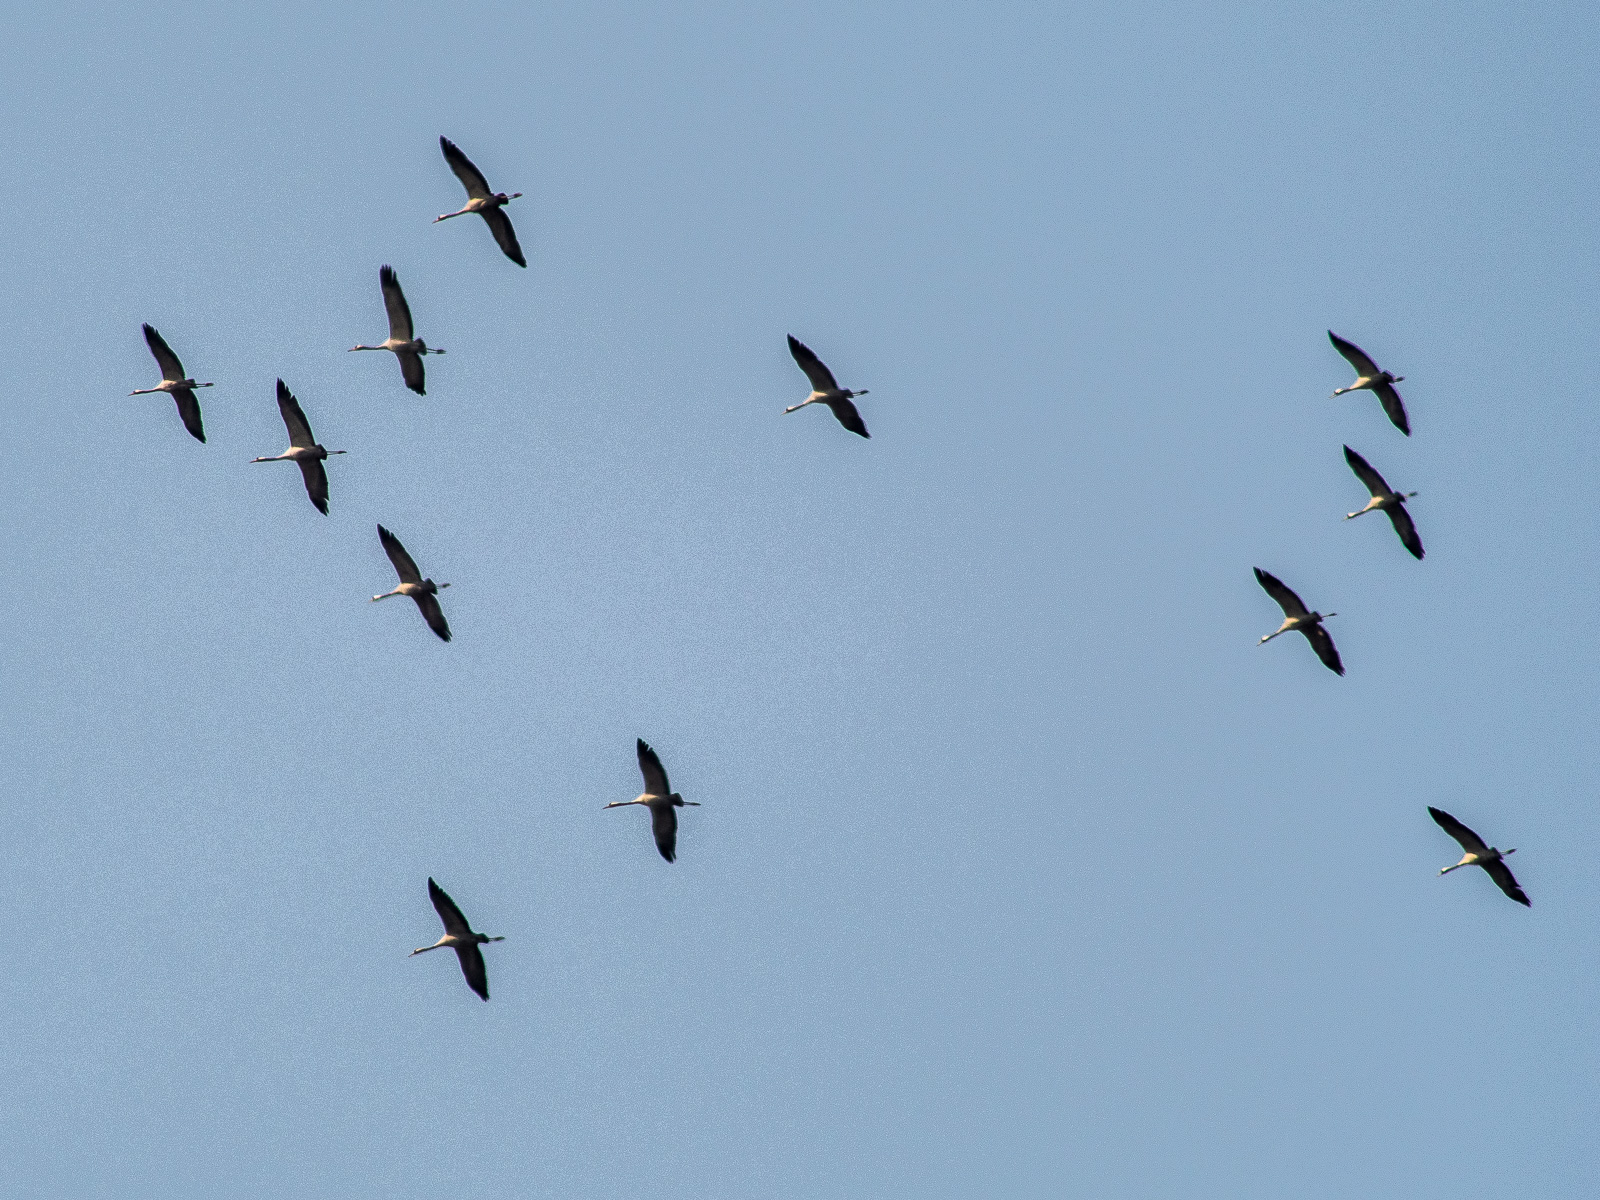 Eine Gruppe von 12 Kranichen am blauen Himmel, alle im Gleitflug mit weit gespannten Flügeln